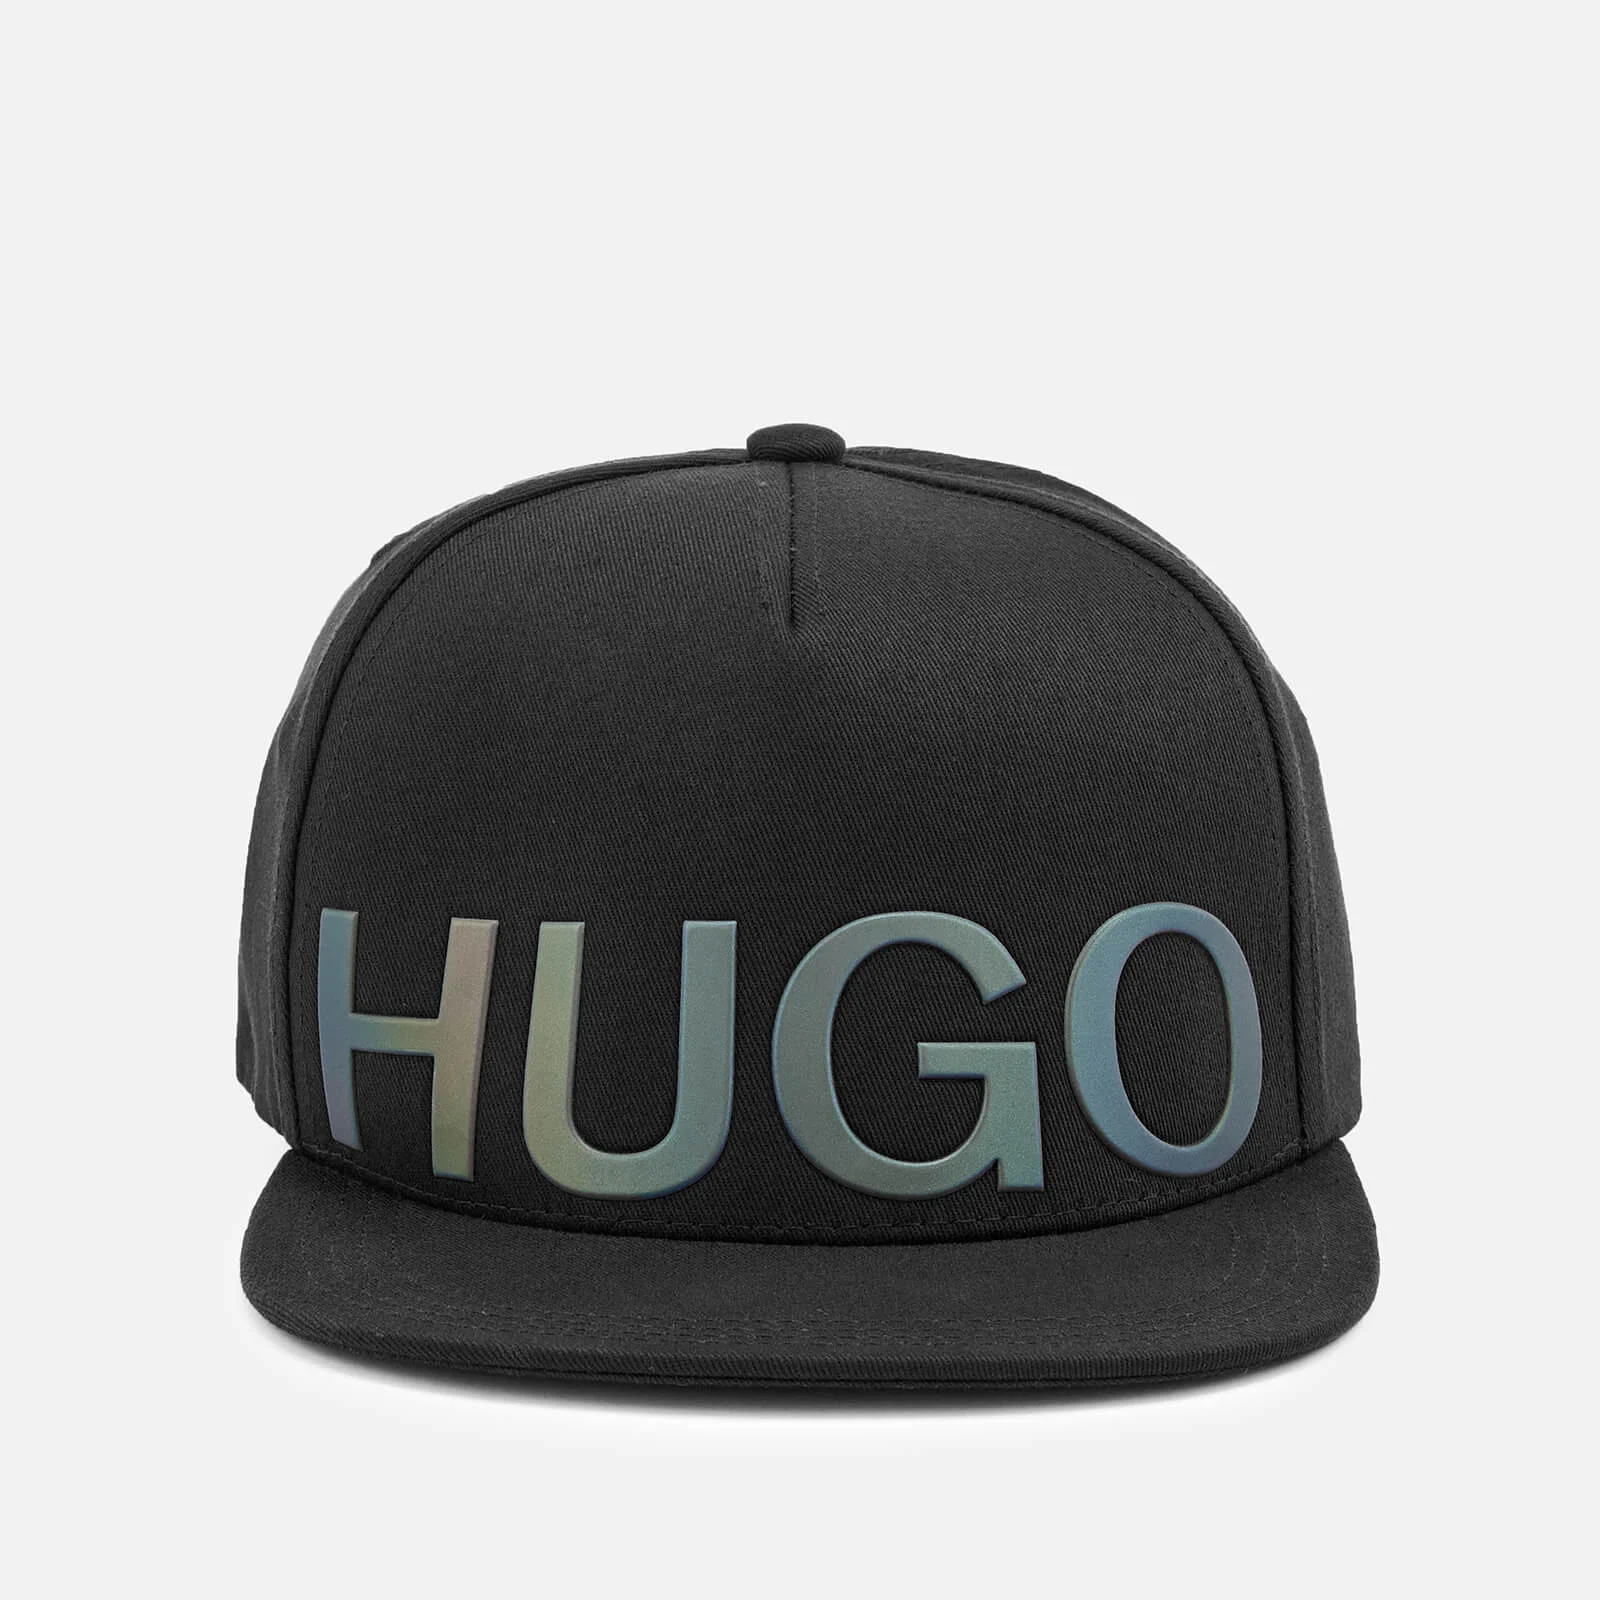 HUGO Men's Baseball Cap - Black Image 1